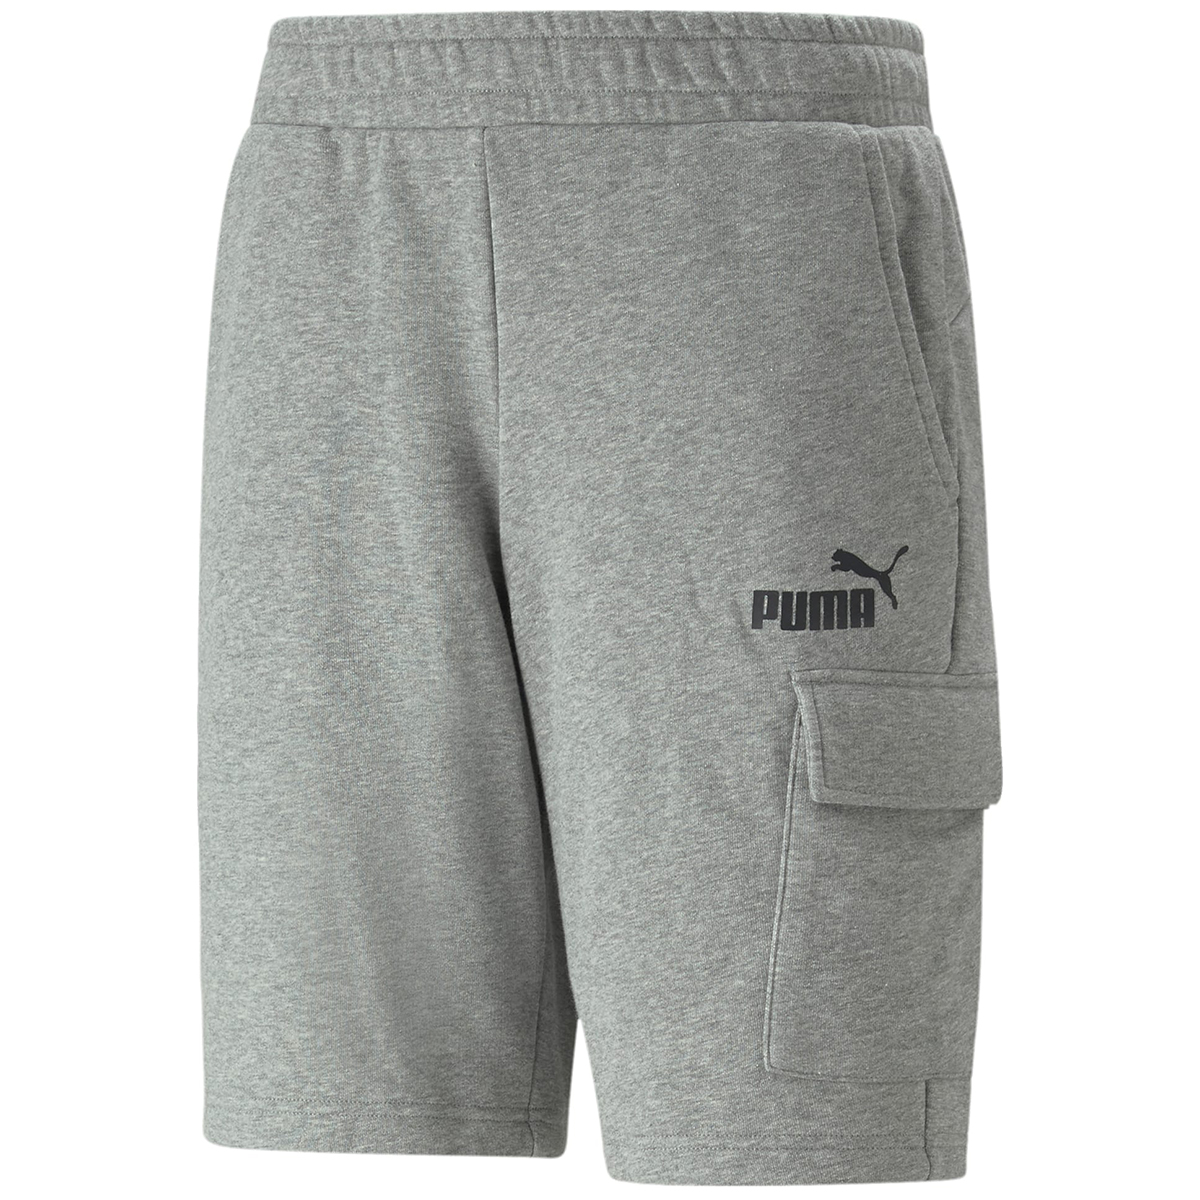 Puma Men's Essential Cargo Shorts